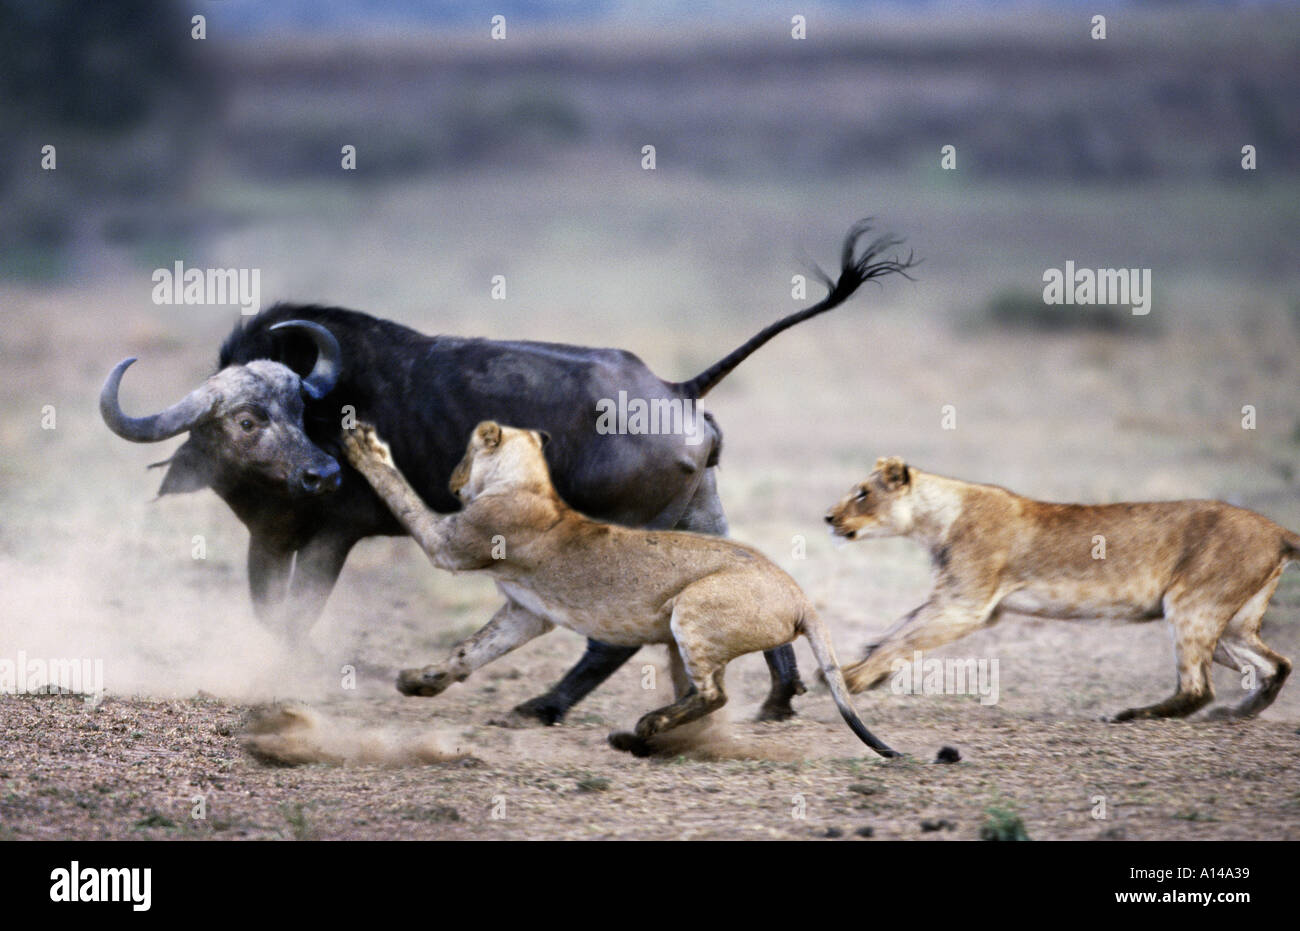 Борьба за существование волка. Соперничество животных. Конкуренция в природе. Конфликт между животными. Борьба животных в дикой природе.